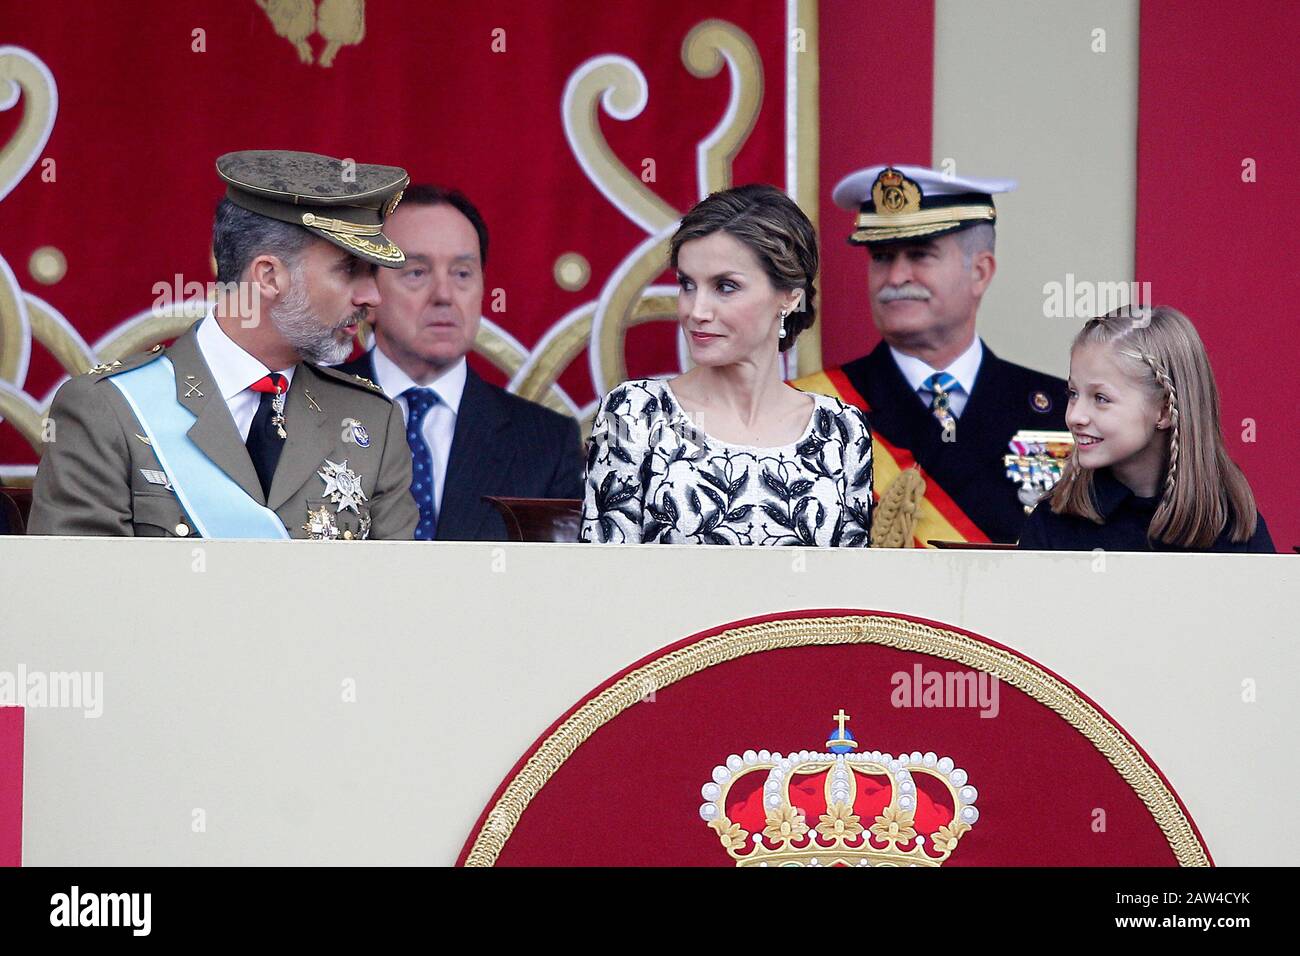 (L-R) König Felipe VI. Von Spanien, Königin Letizia von Spanien und Prinzessin Leonor von Spanien nehmen an der Militärparade des nationalen Tages Teil. Oktober 2016. (ALTERPH Stockfoto